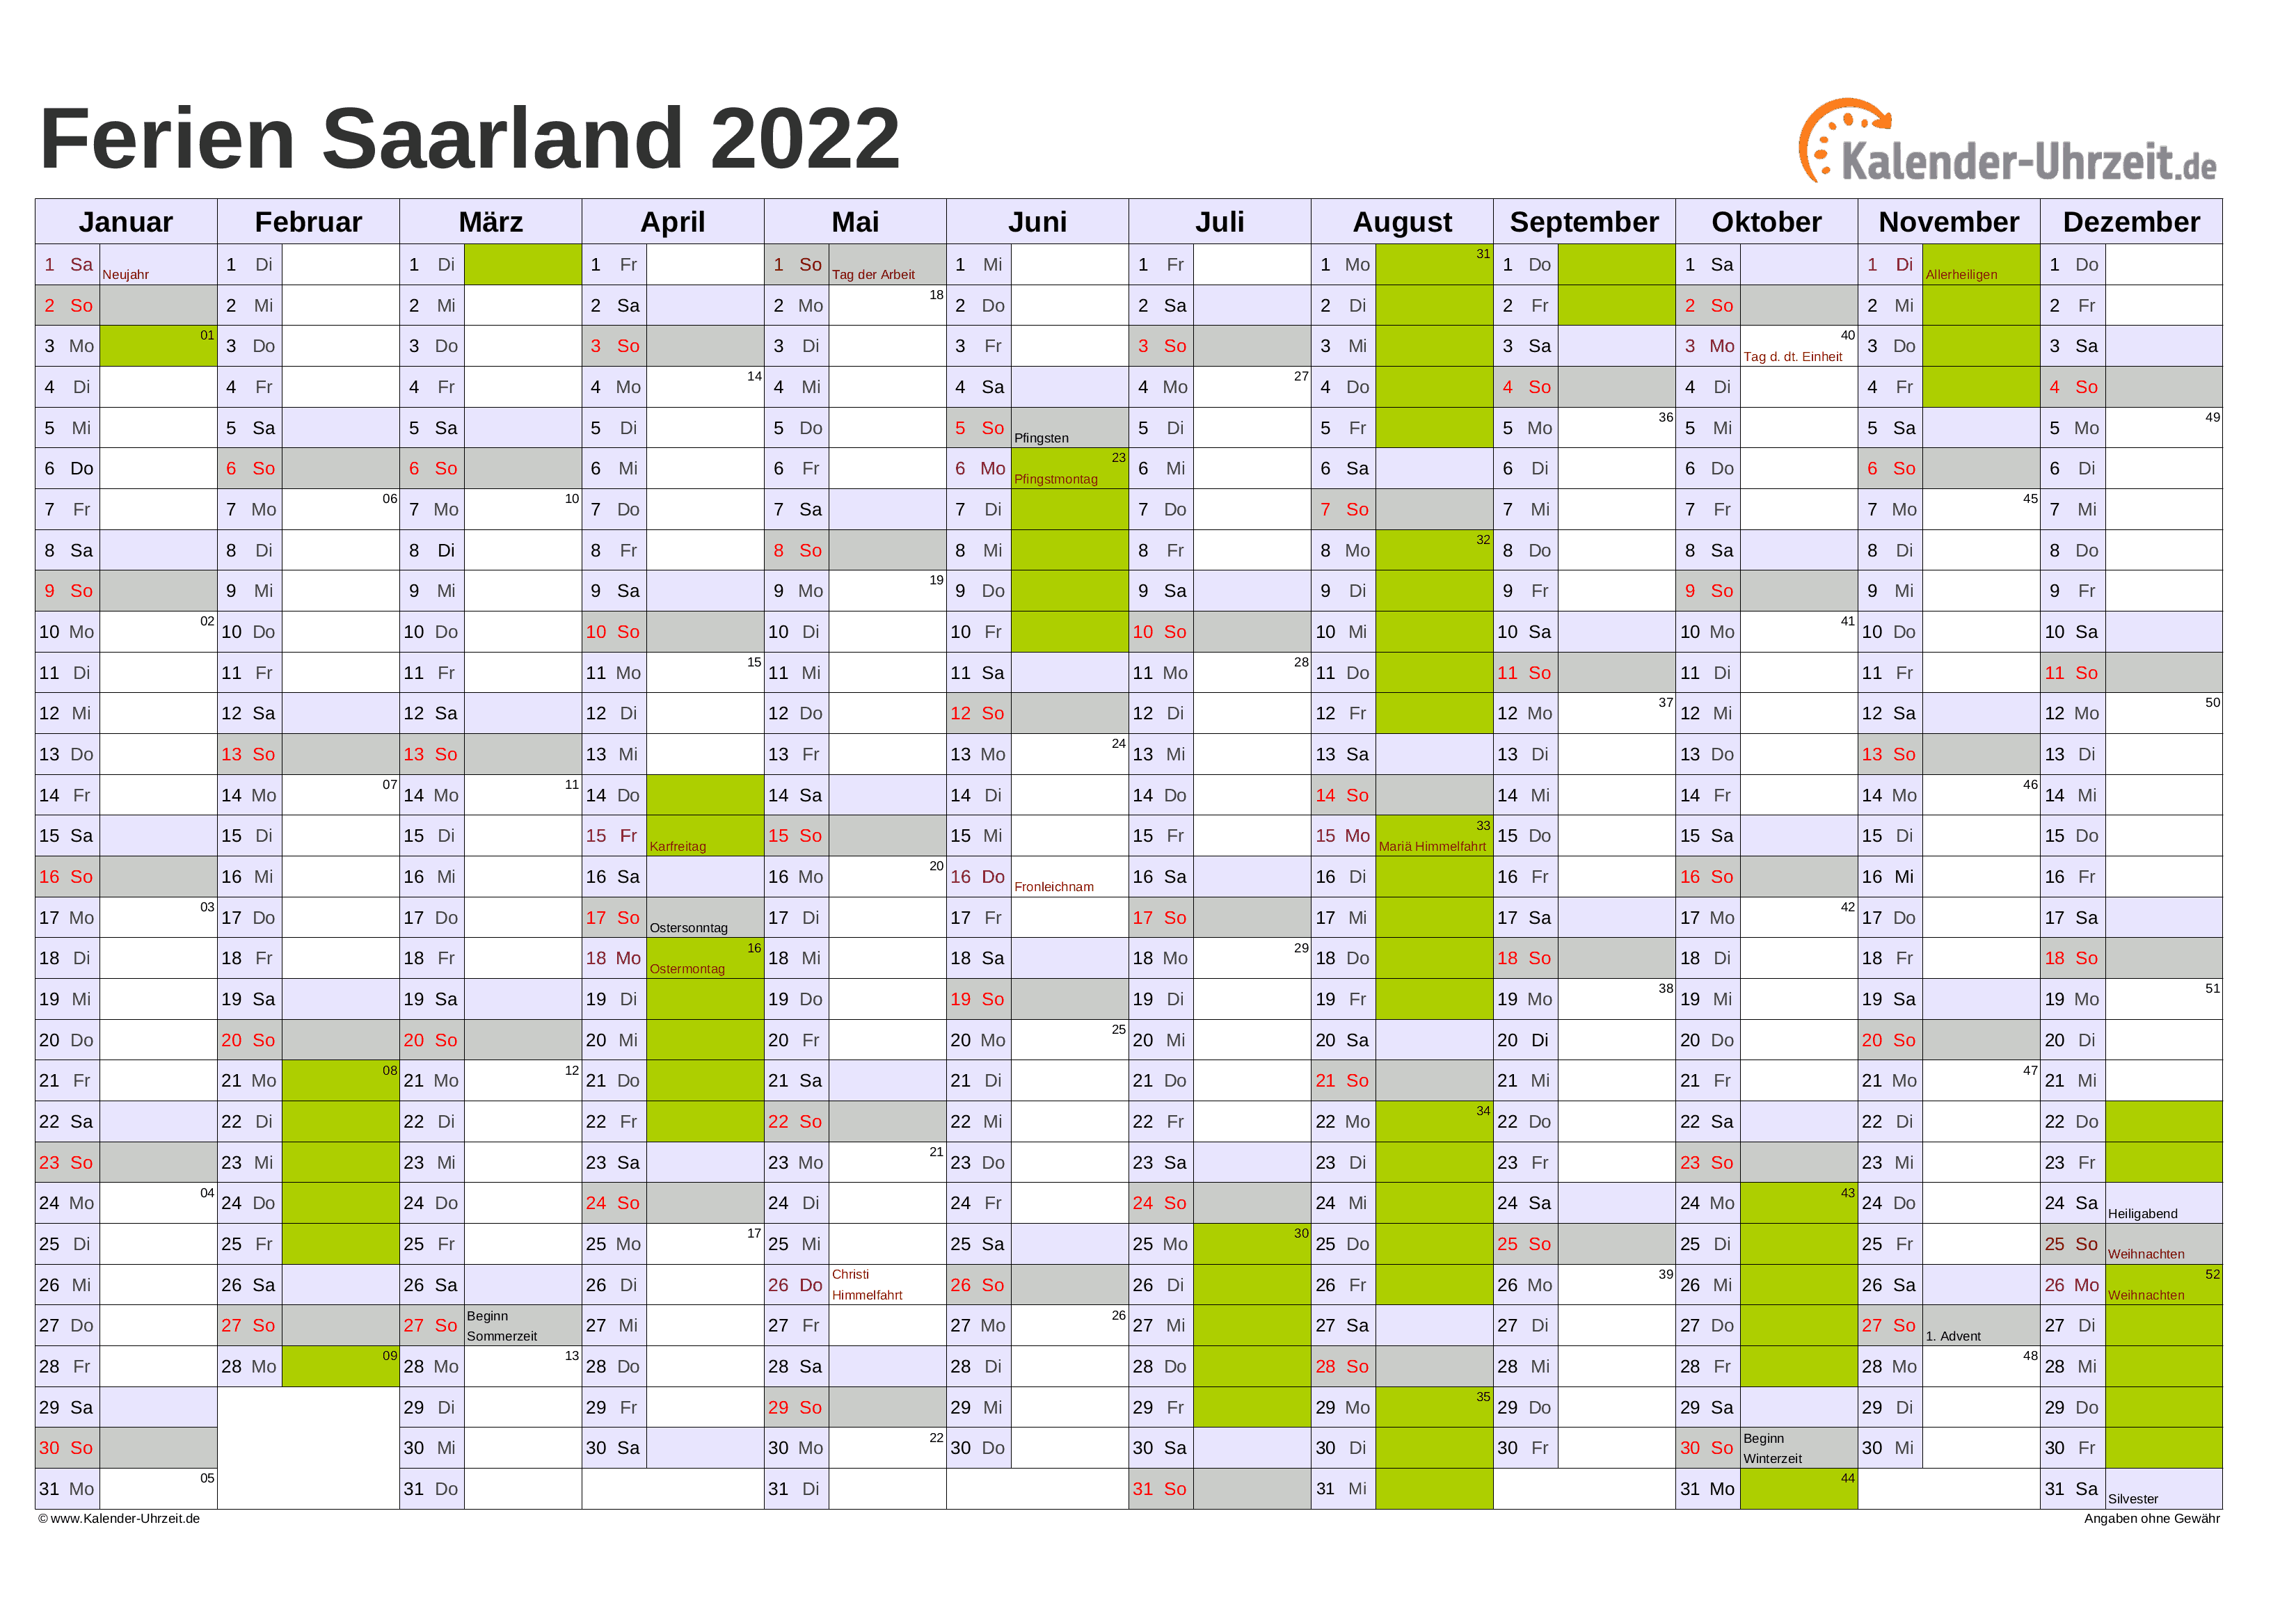 Ferien Saarland 2022 - Ferienkalender zum Ausdrucken